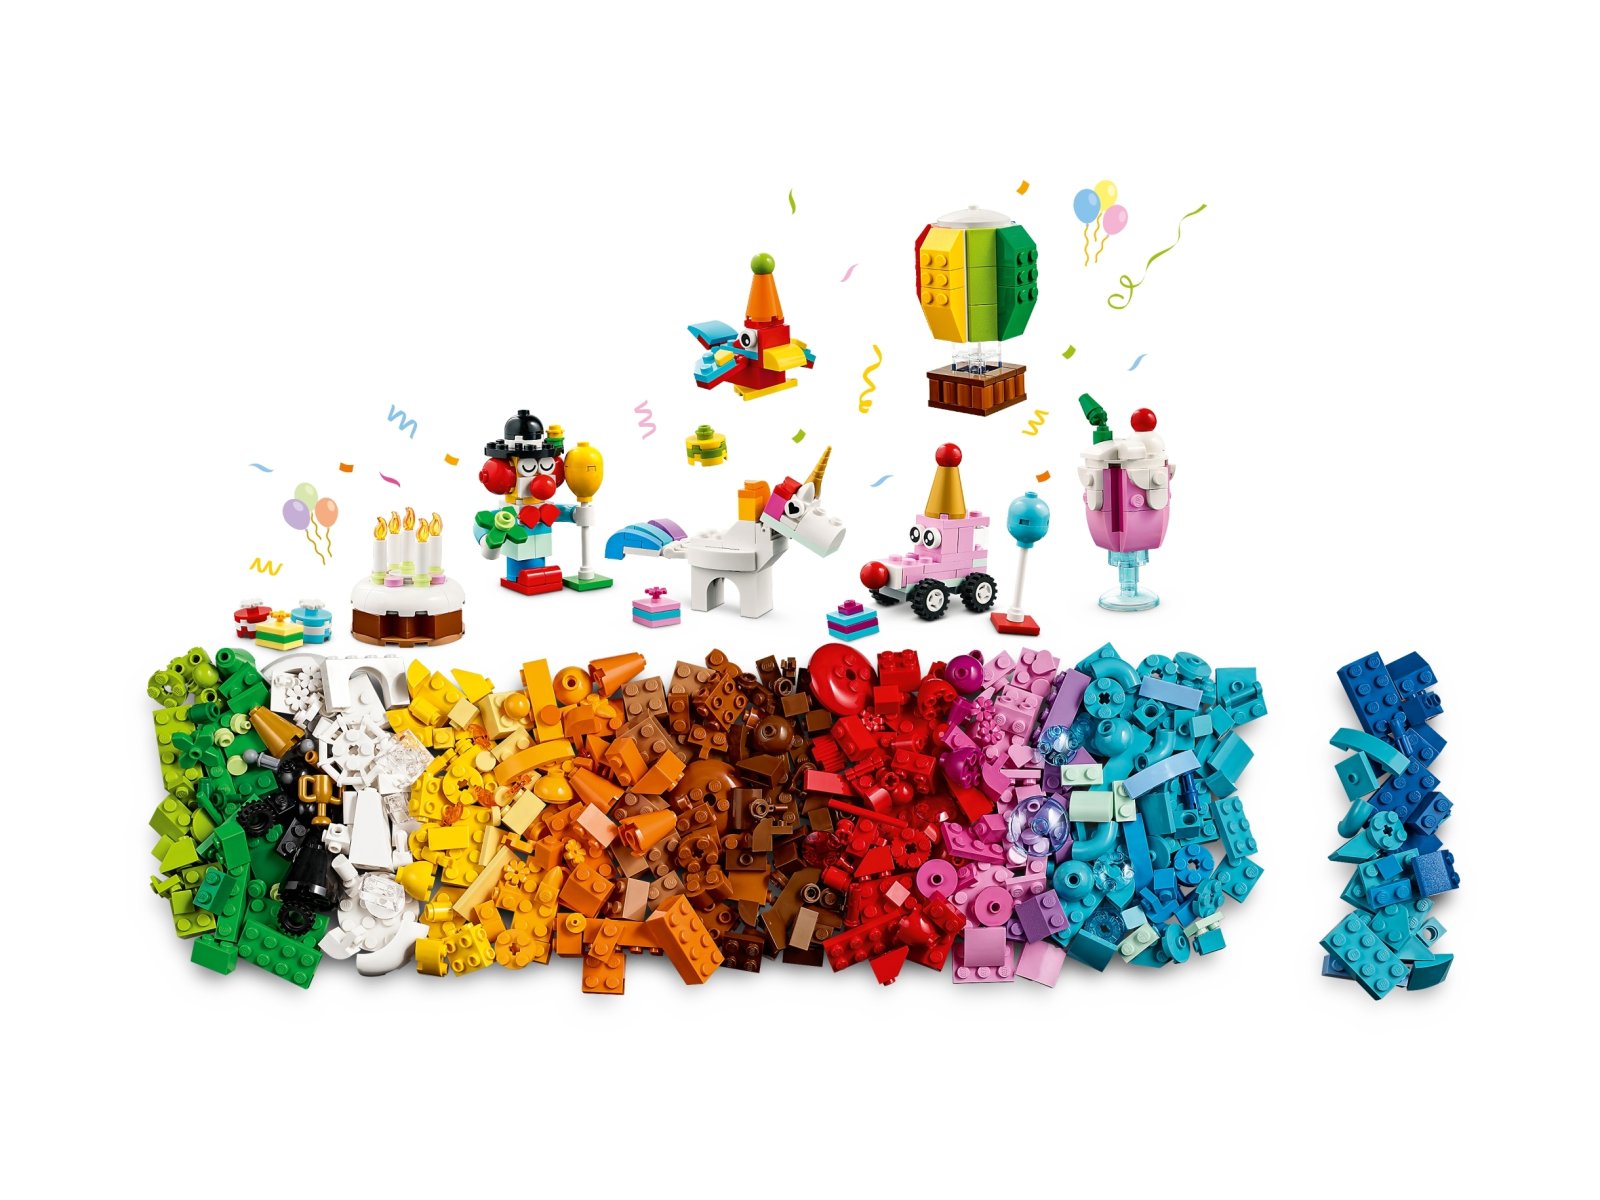 LEGO 11029 Classic Kreatywny zestaw imprezowy